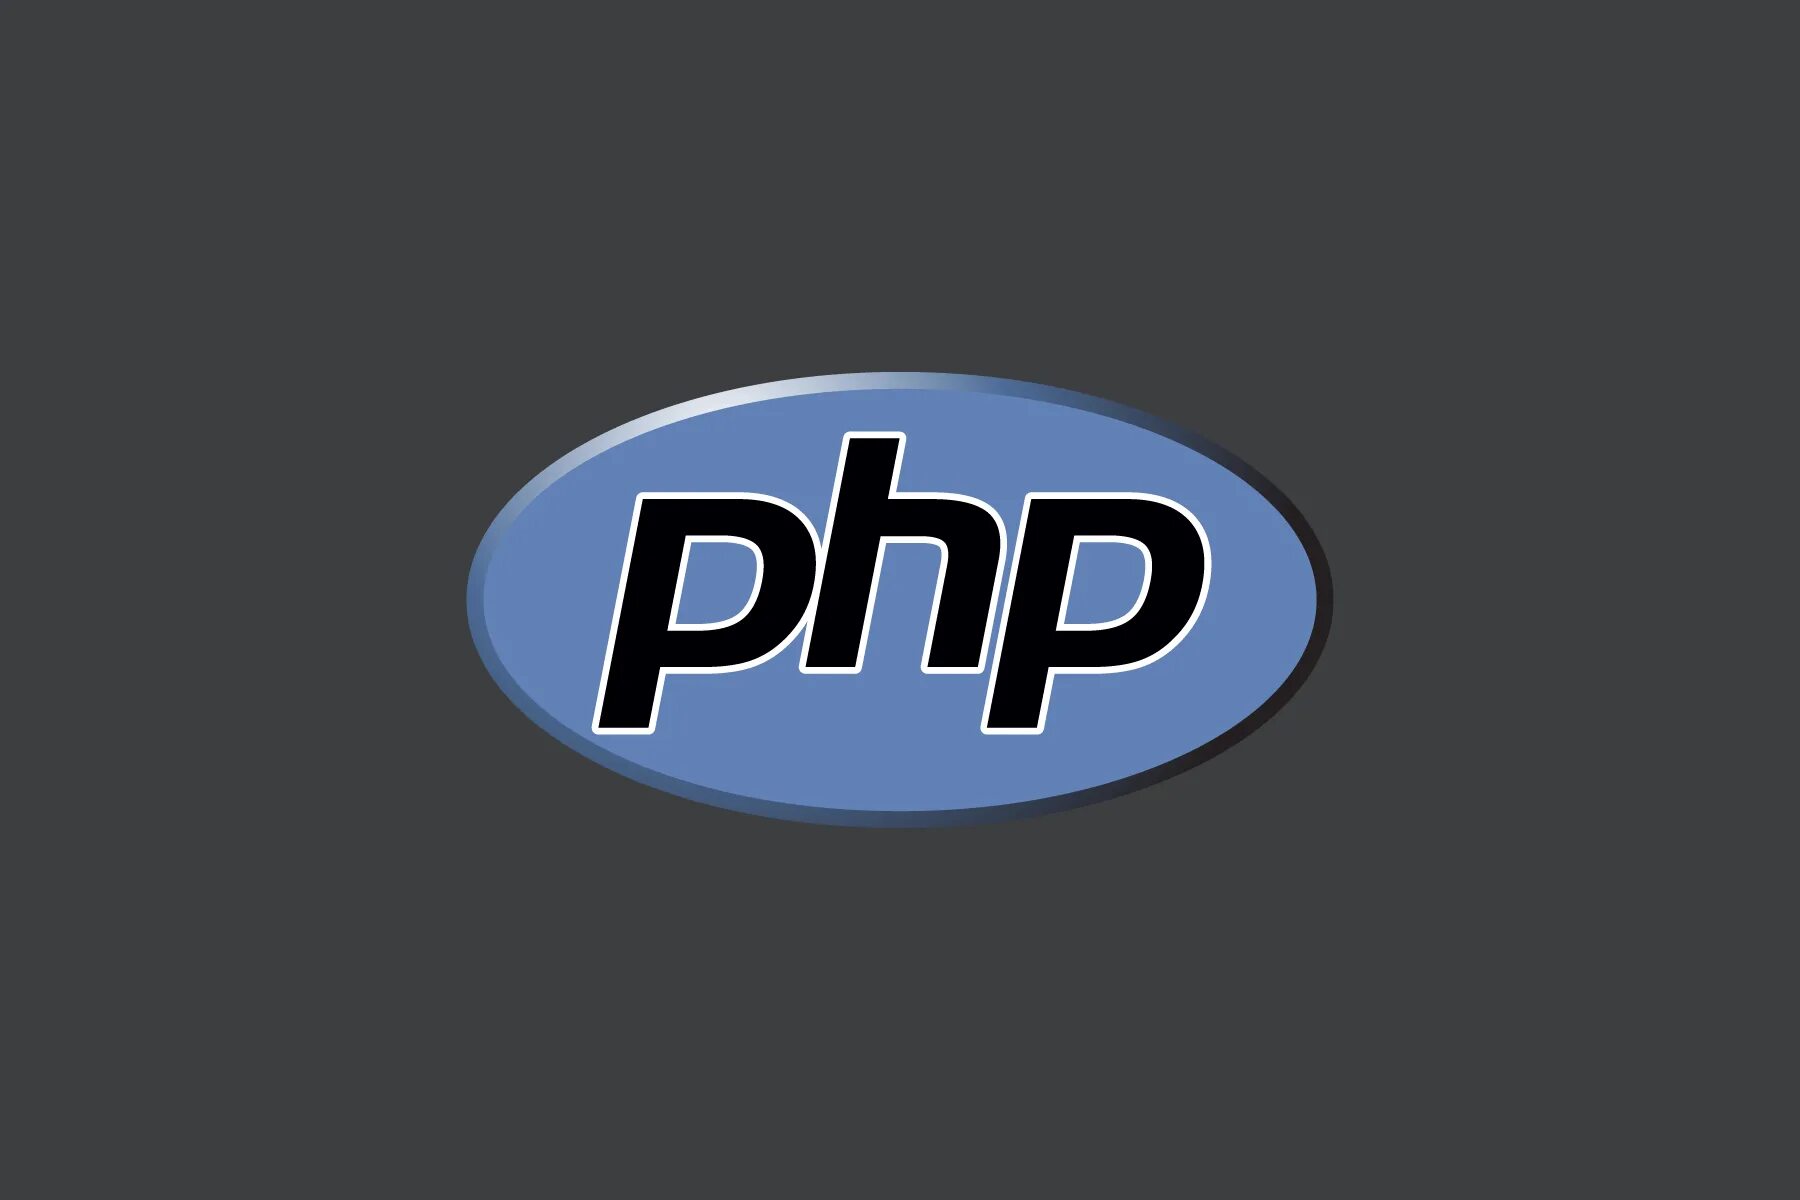 S php views. Php логотип. Значок php. Php язык программирования логотип. Php картинка.